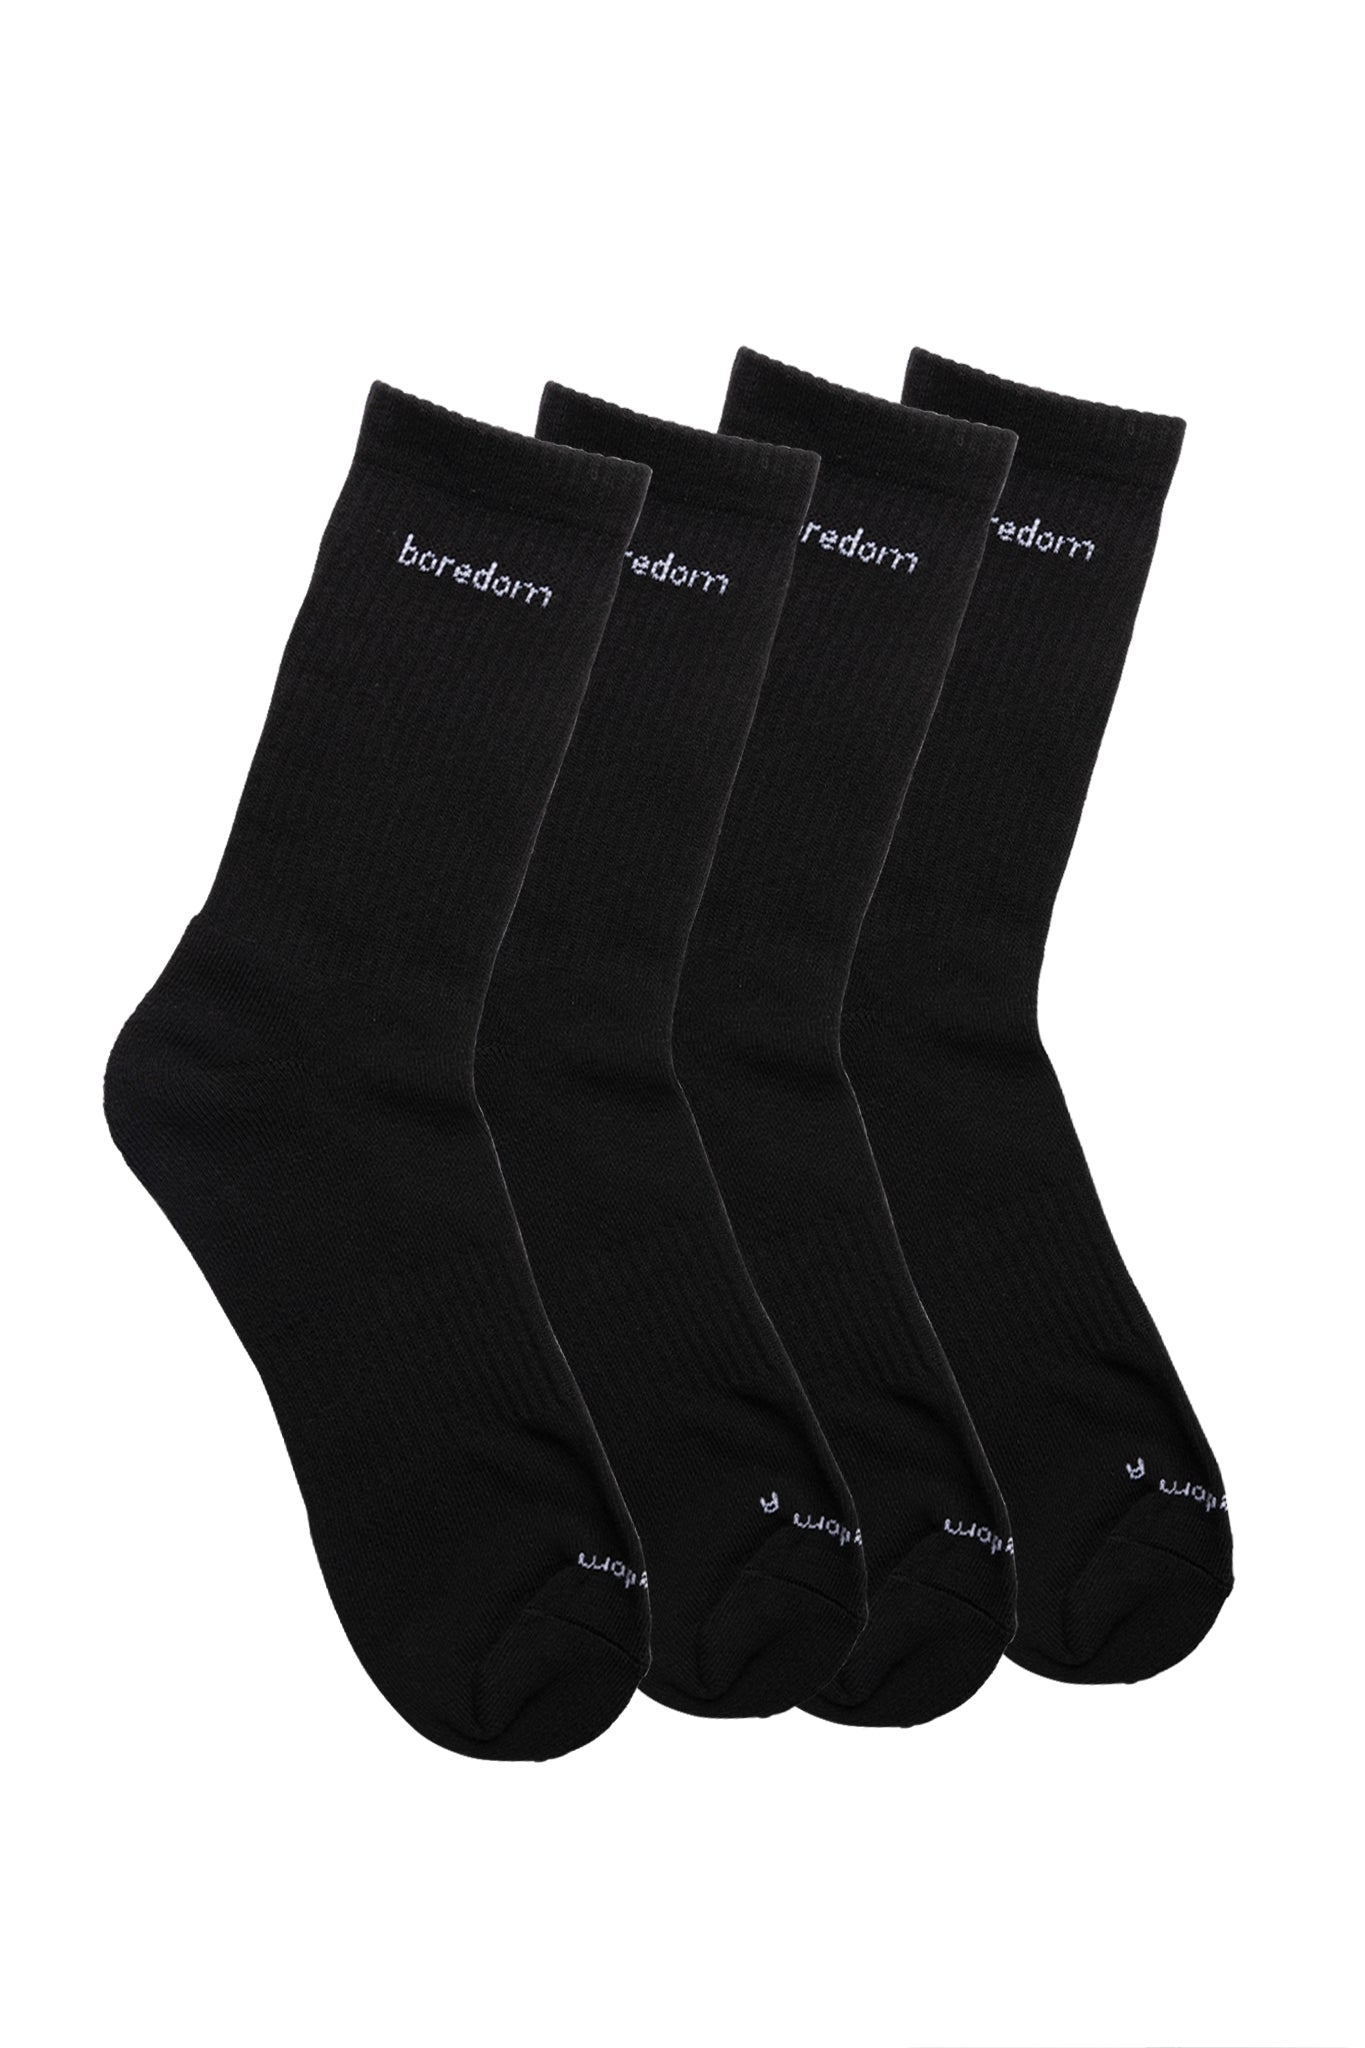 Word Mark 2-Pack of Socks - Black